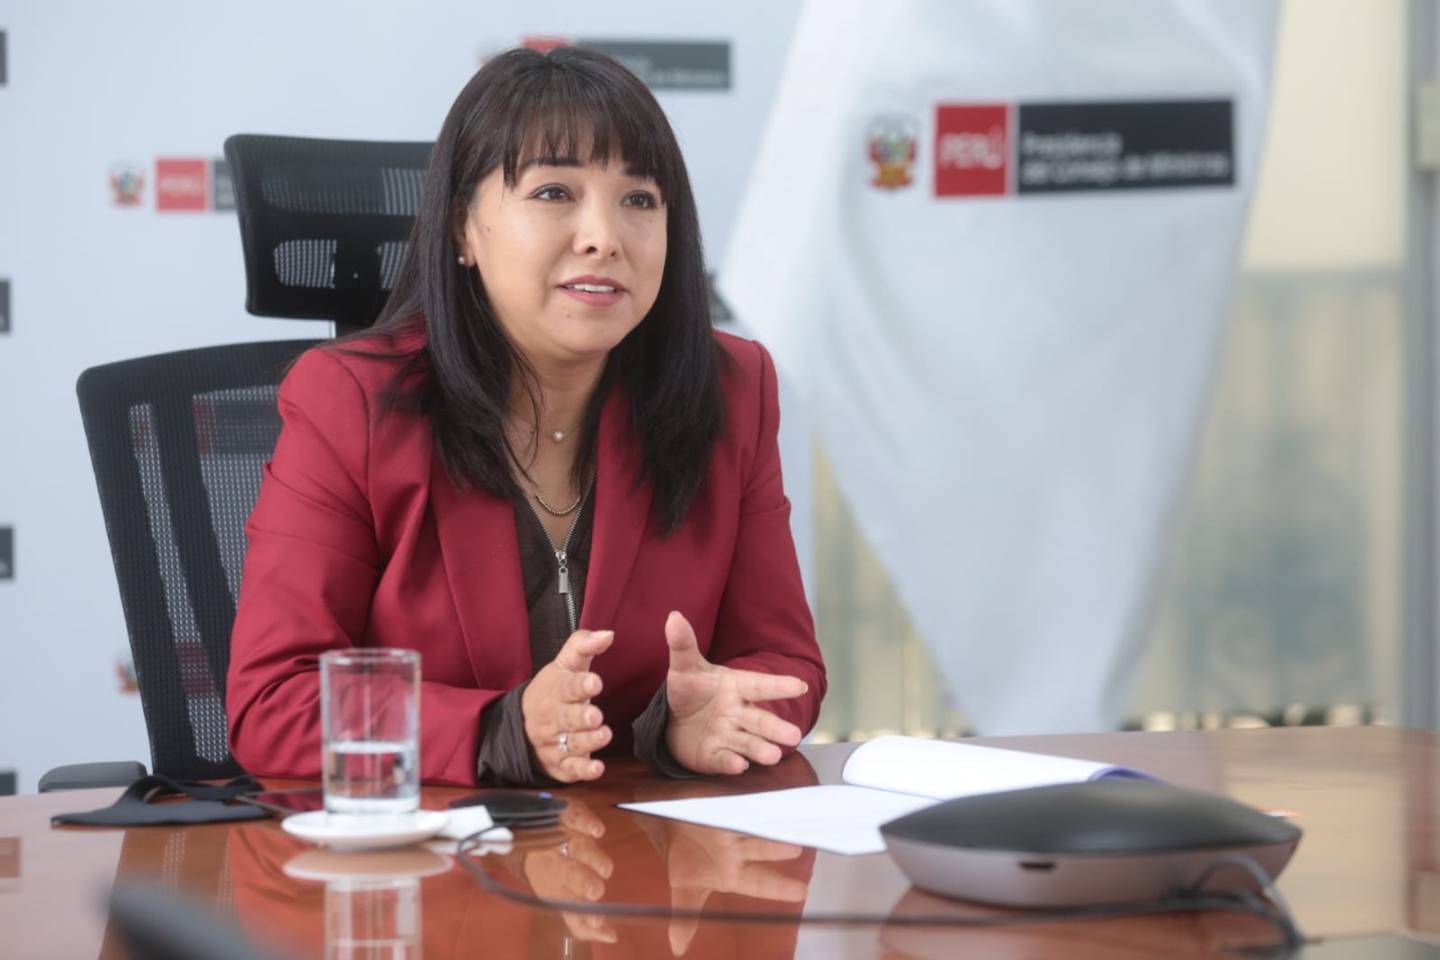 “En las próximas horas” Perú anunciaría al nuevo ministro de Defensa: PCM.